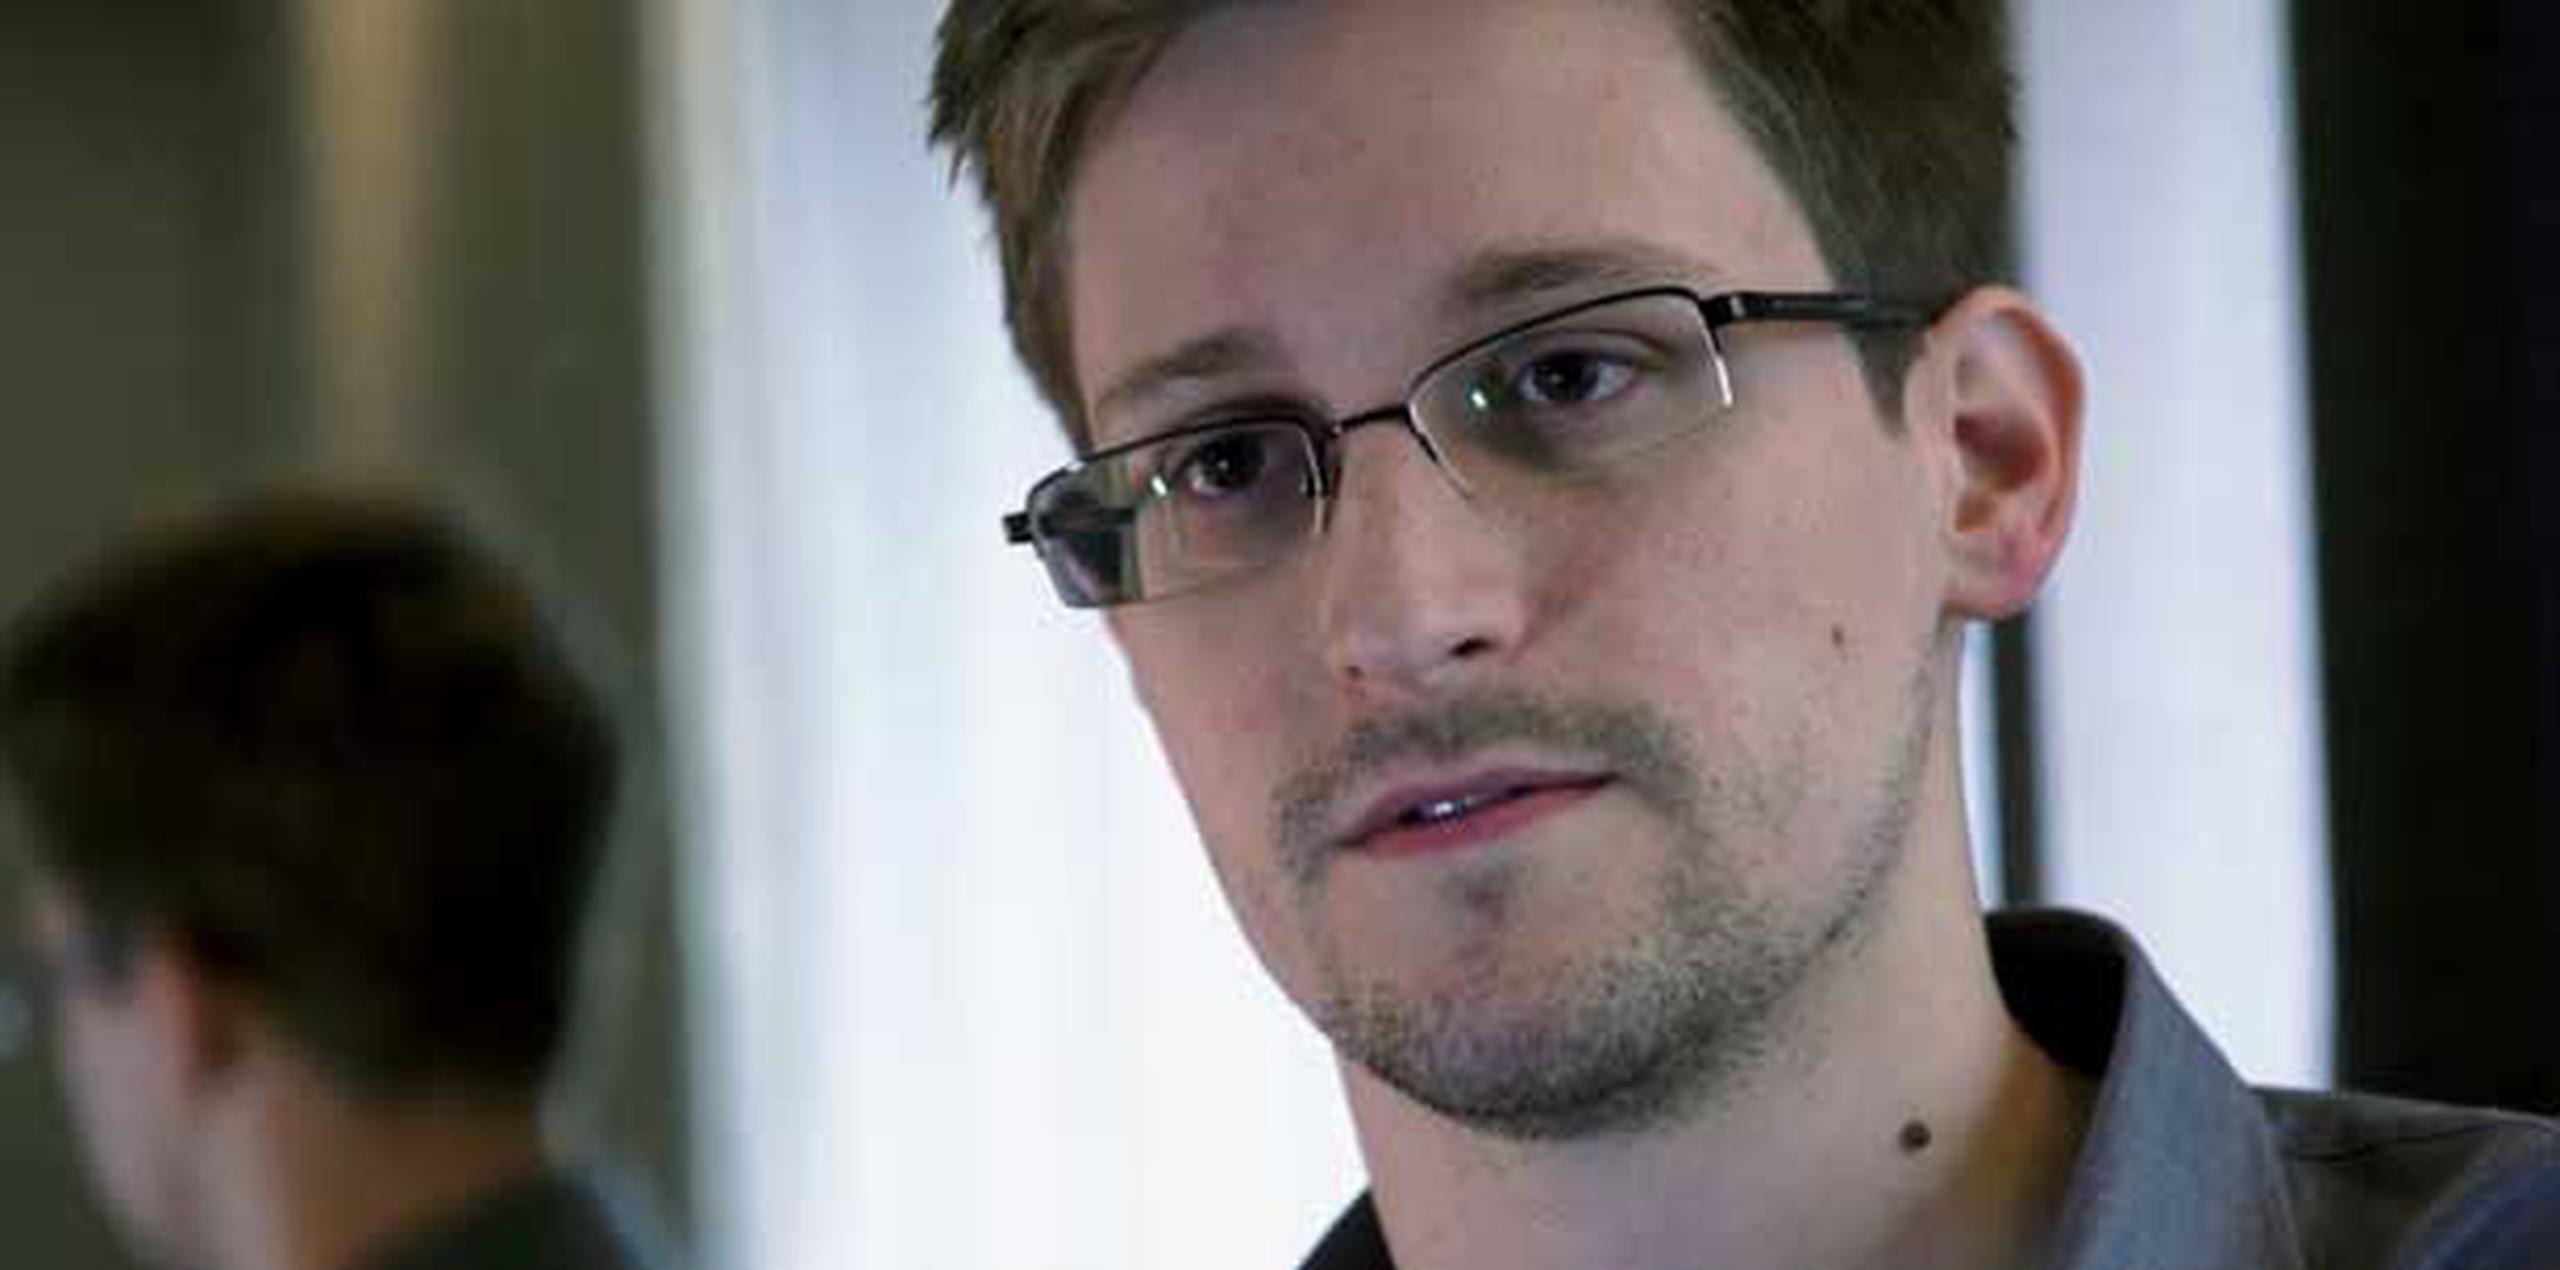 Edward Snowden permaneció hasta el 1 de agosto en la zona de tránsito del aeropuerto moscovita de Sheremétievo.  (EFE/Archivo/Glenn Greenwald / Laura Poitras)